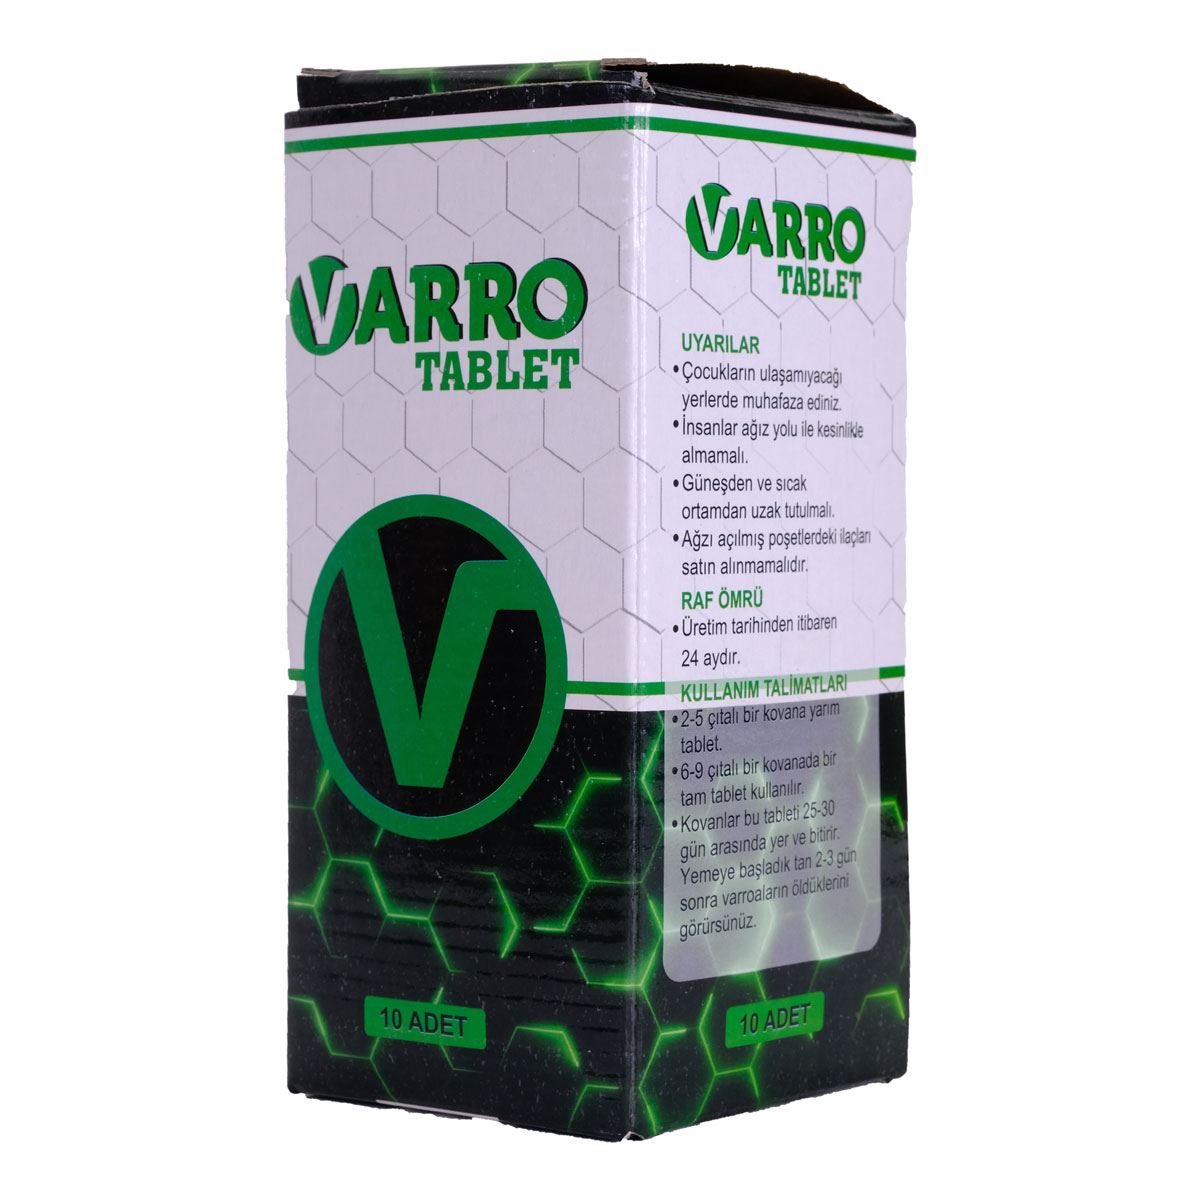 Varroa Tablet